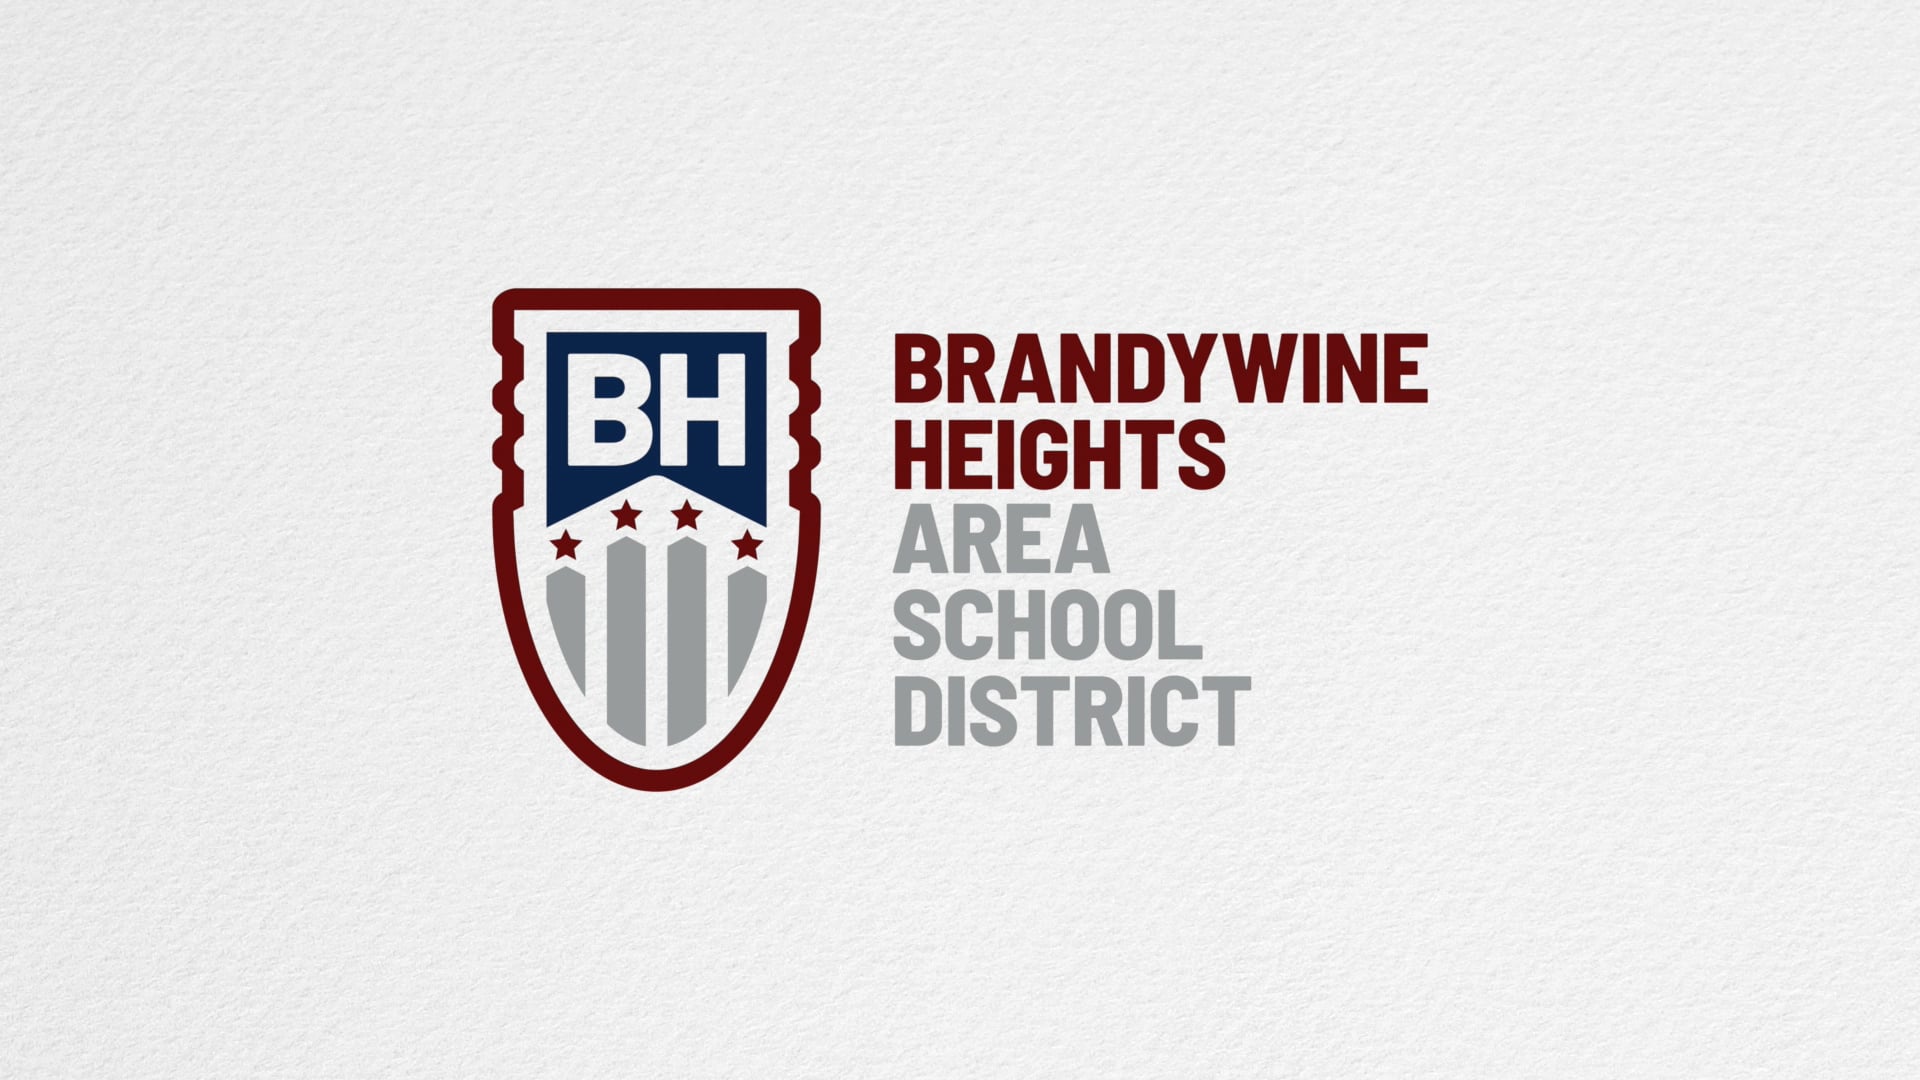 Brandywine Heights Area School District